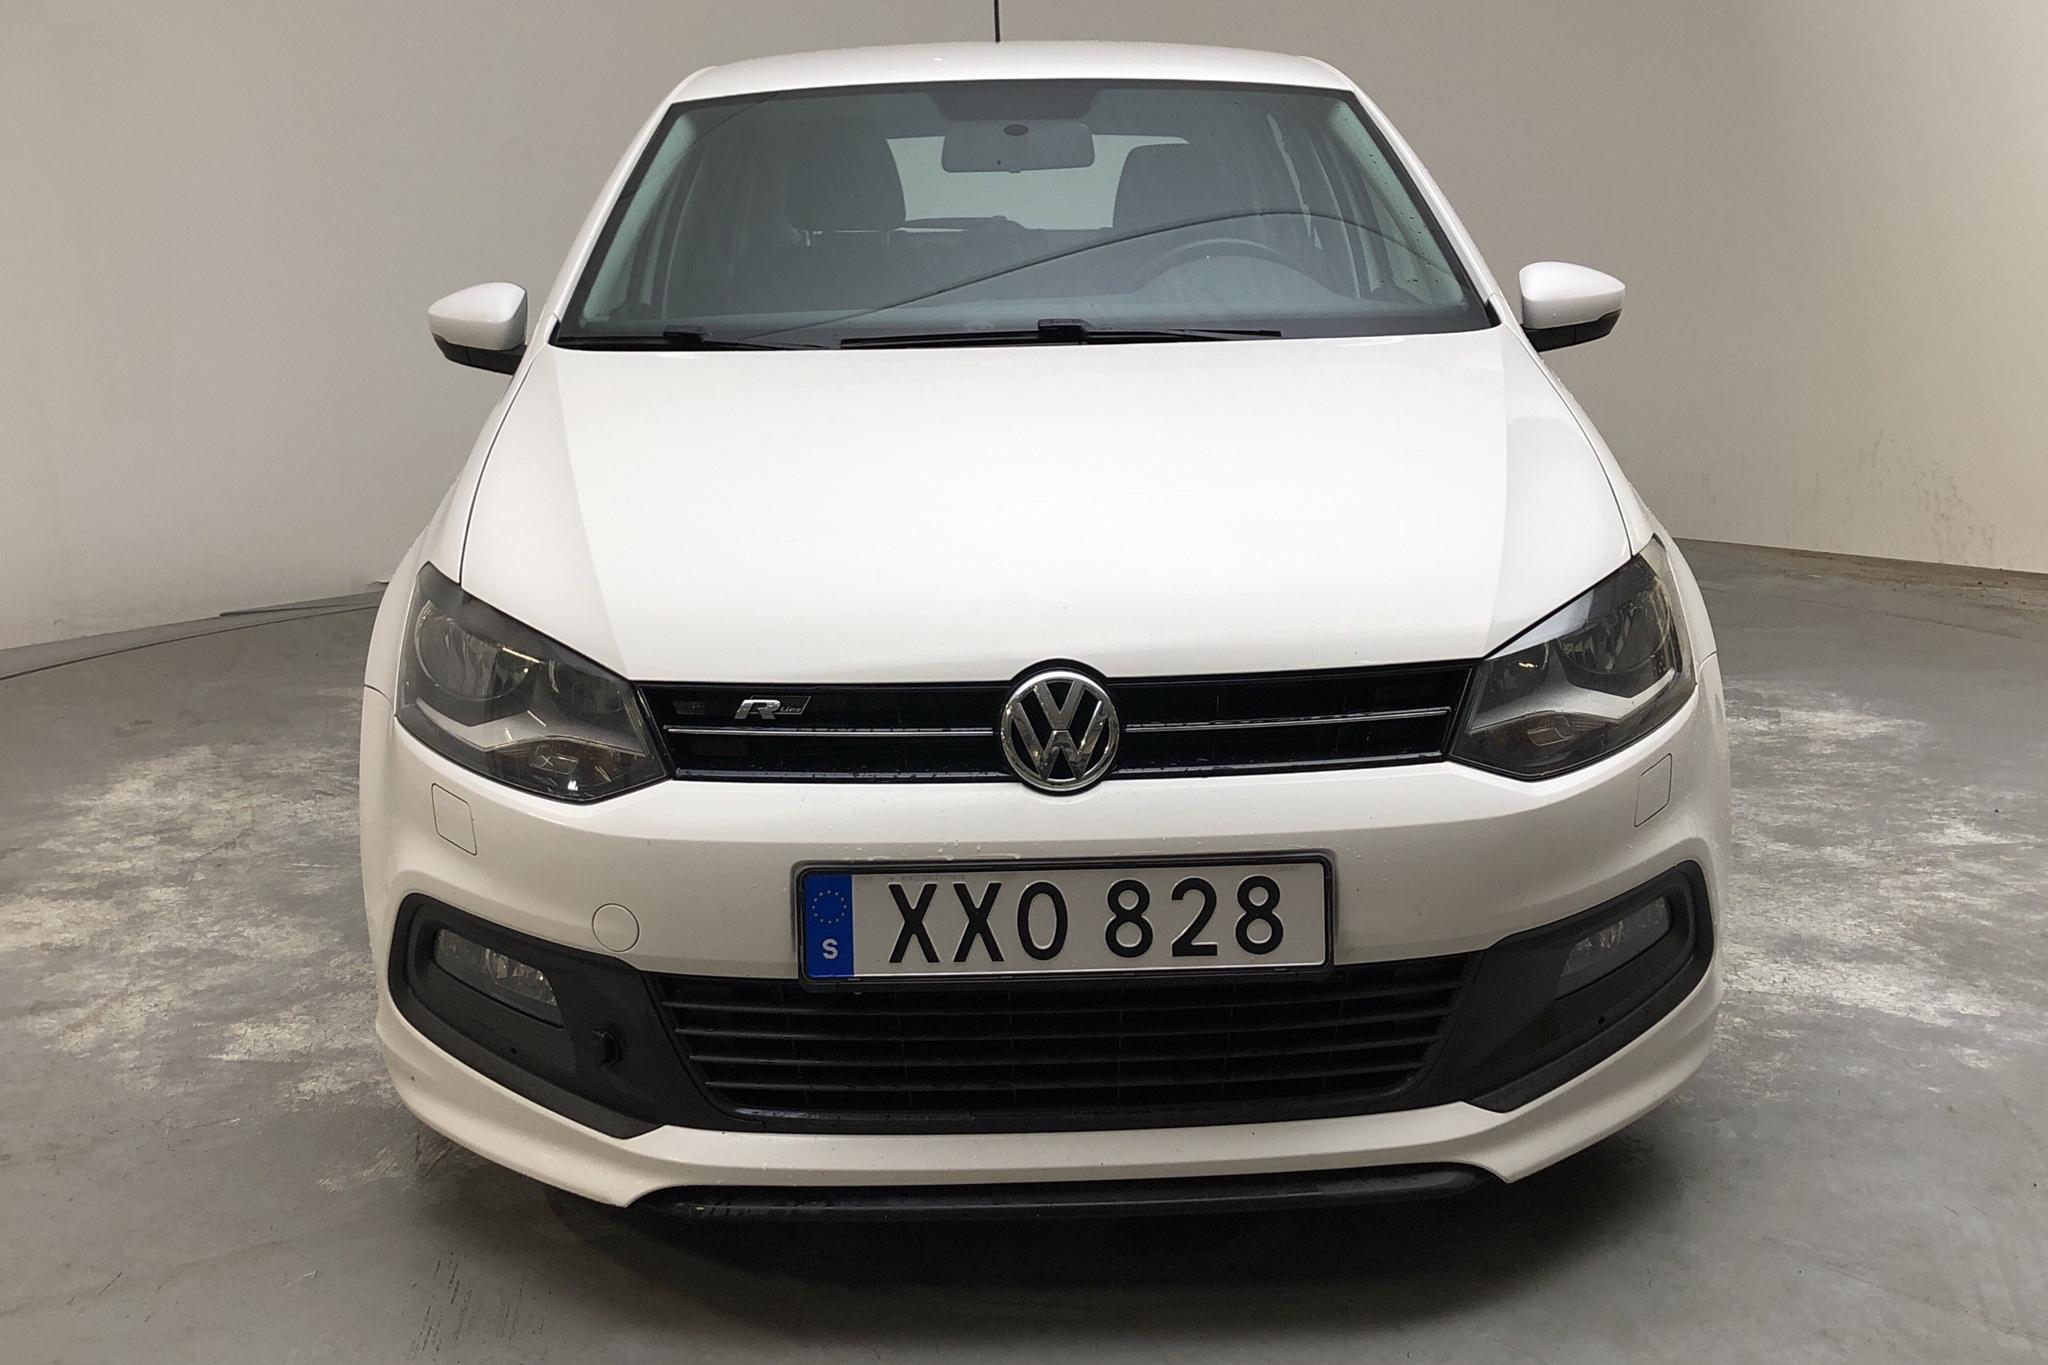 VW Polo 1.2 TSI 5dr (90hk) - 141 020 km - Manual - white - 2014